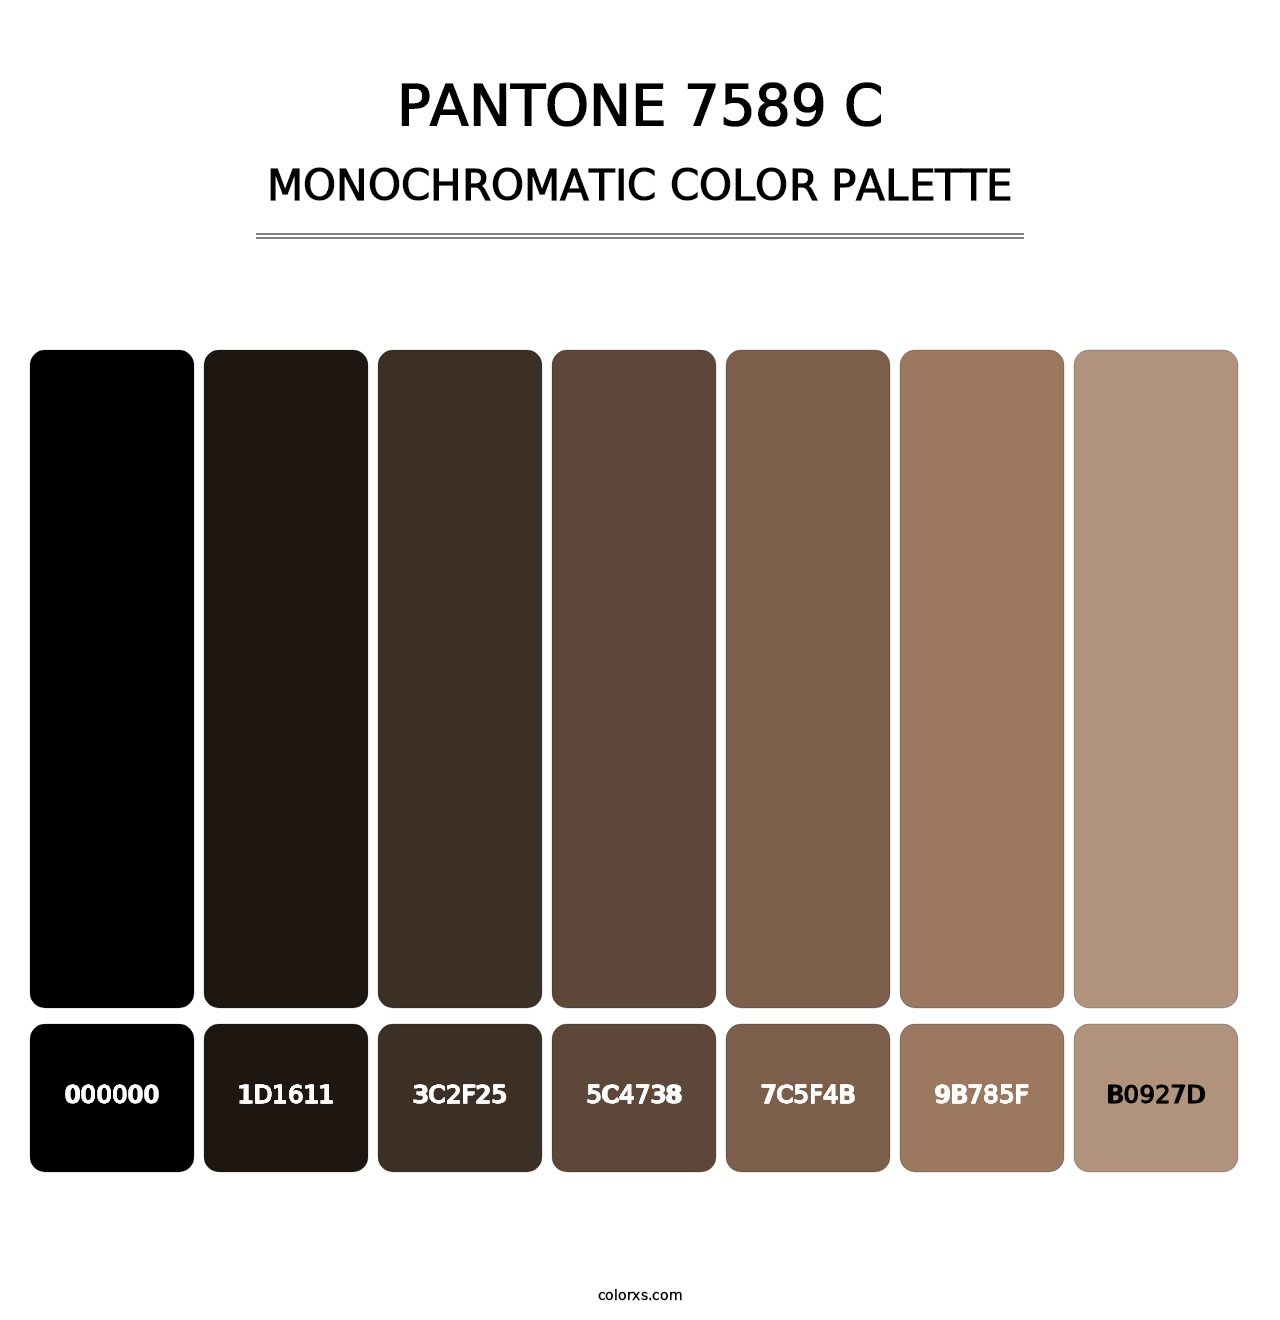 PANTONE 7589 C - Monochromatic Color Palette